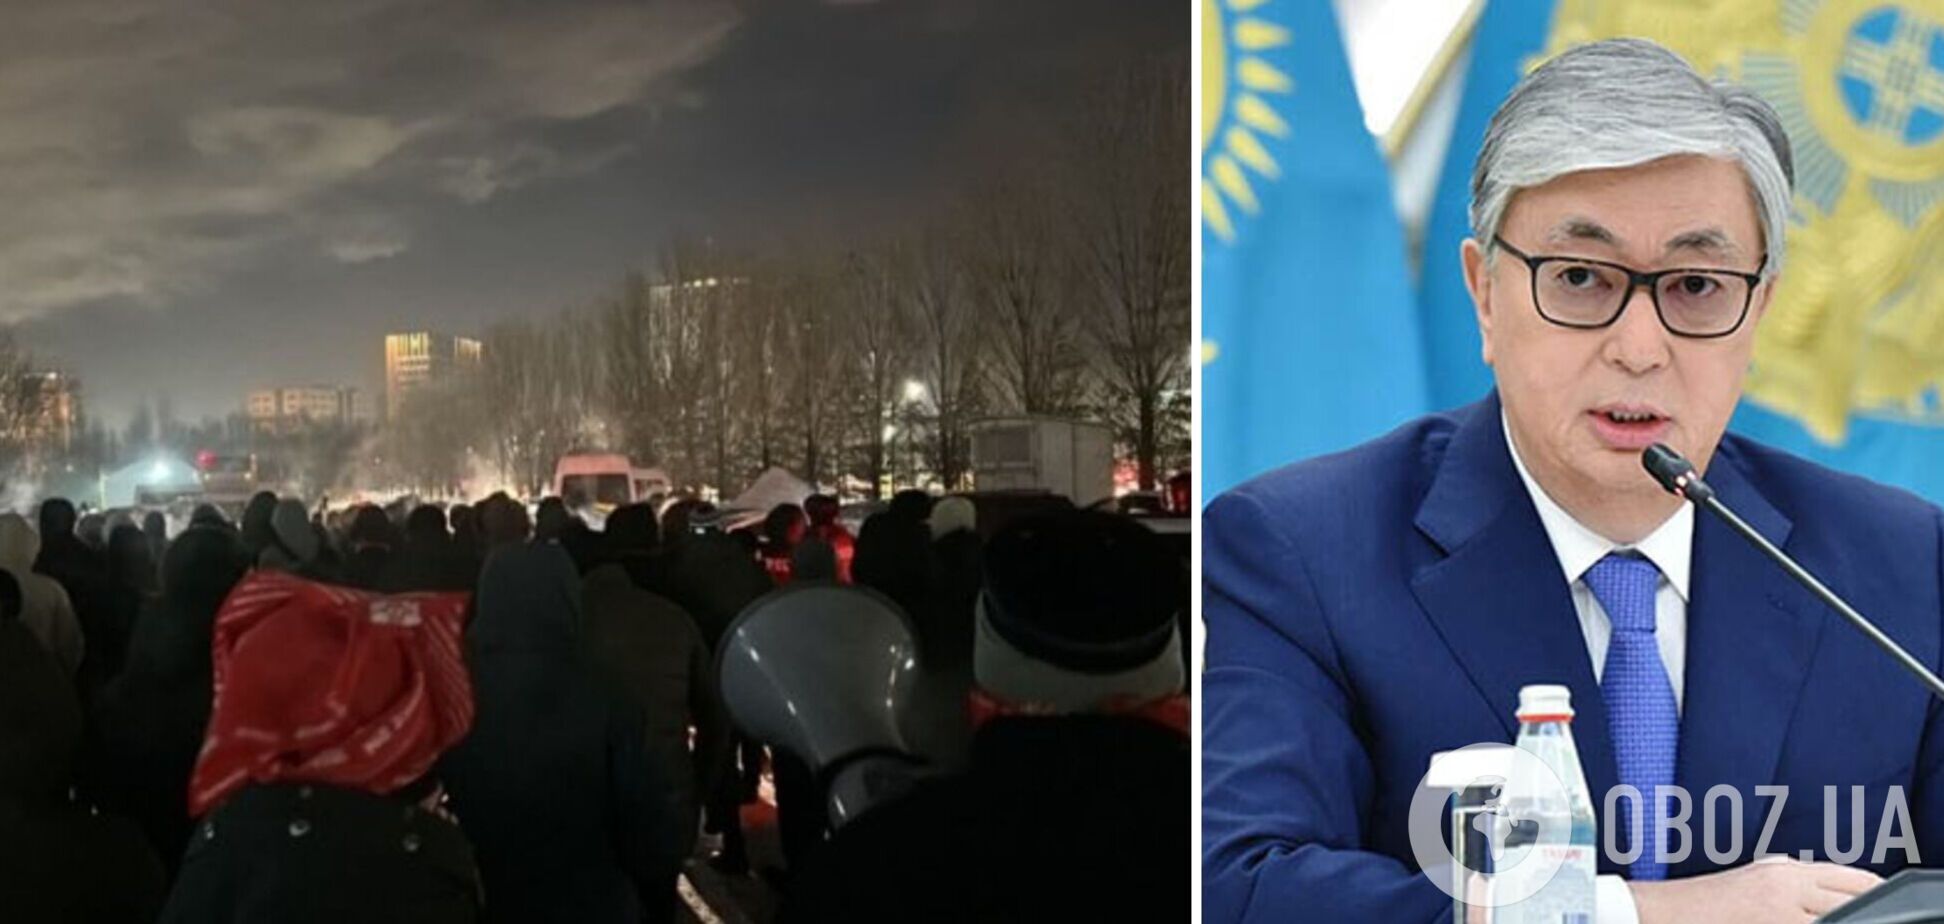 Полиция в Астане разогнала акцию протеста после инаугурации Токаева: людей задерживали, отключили интернет в городе. Видео